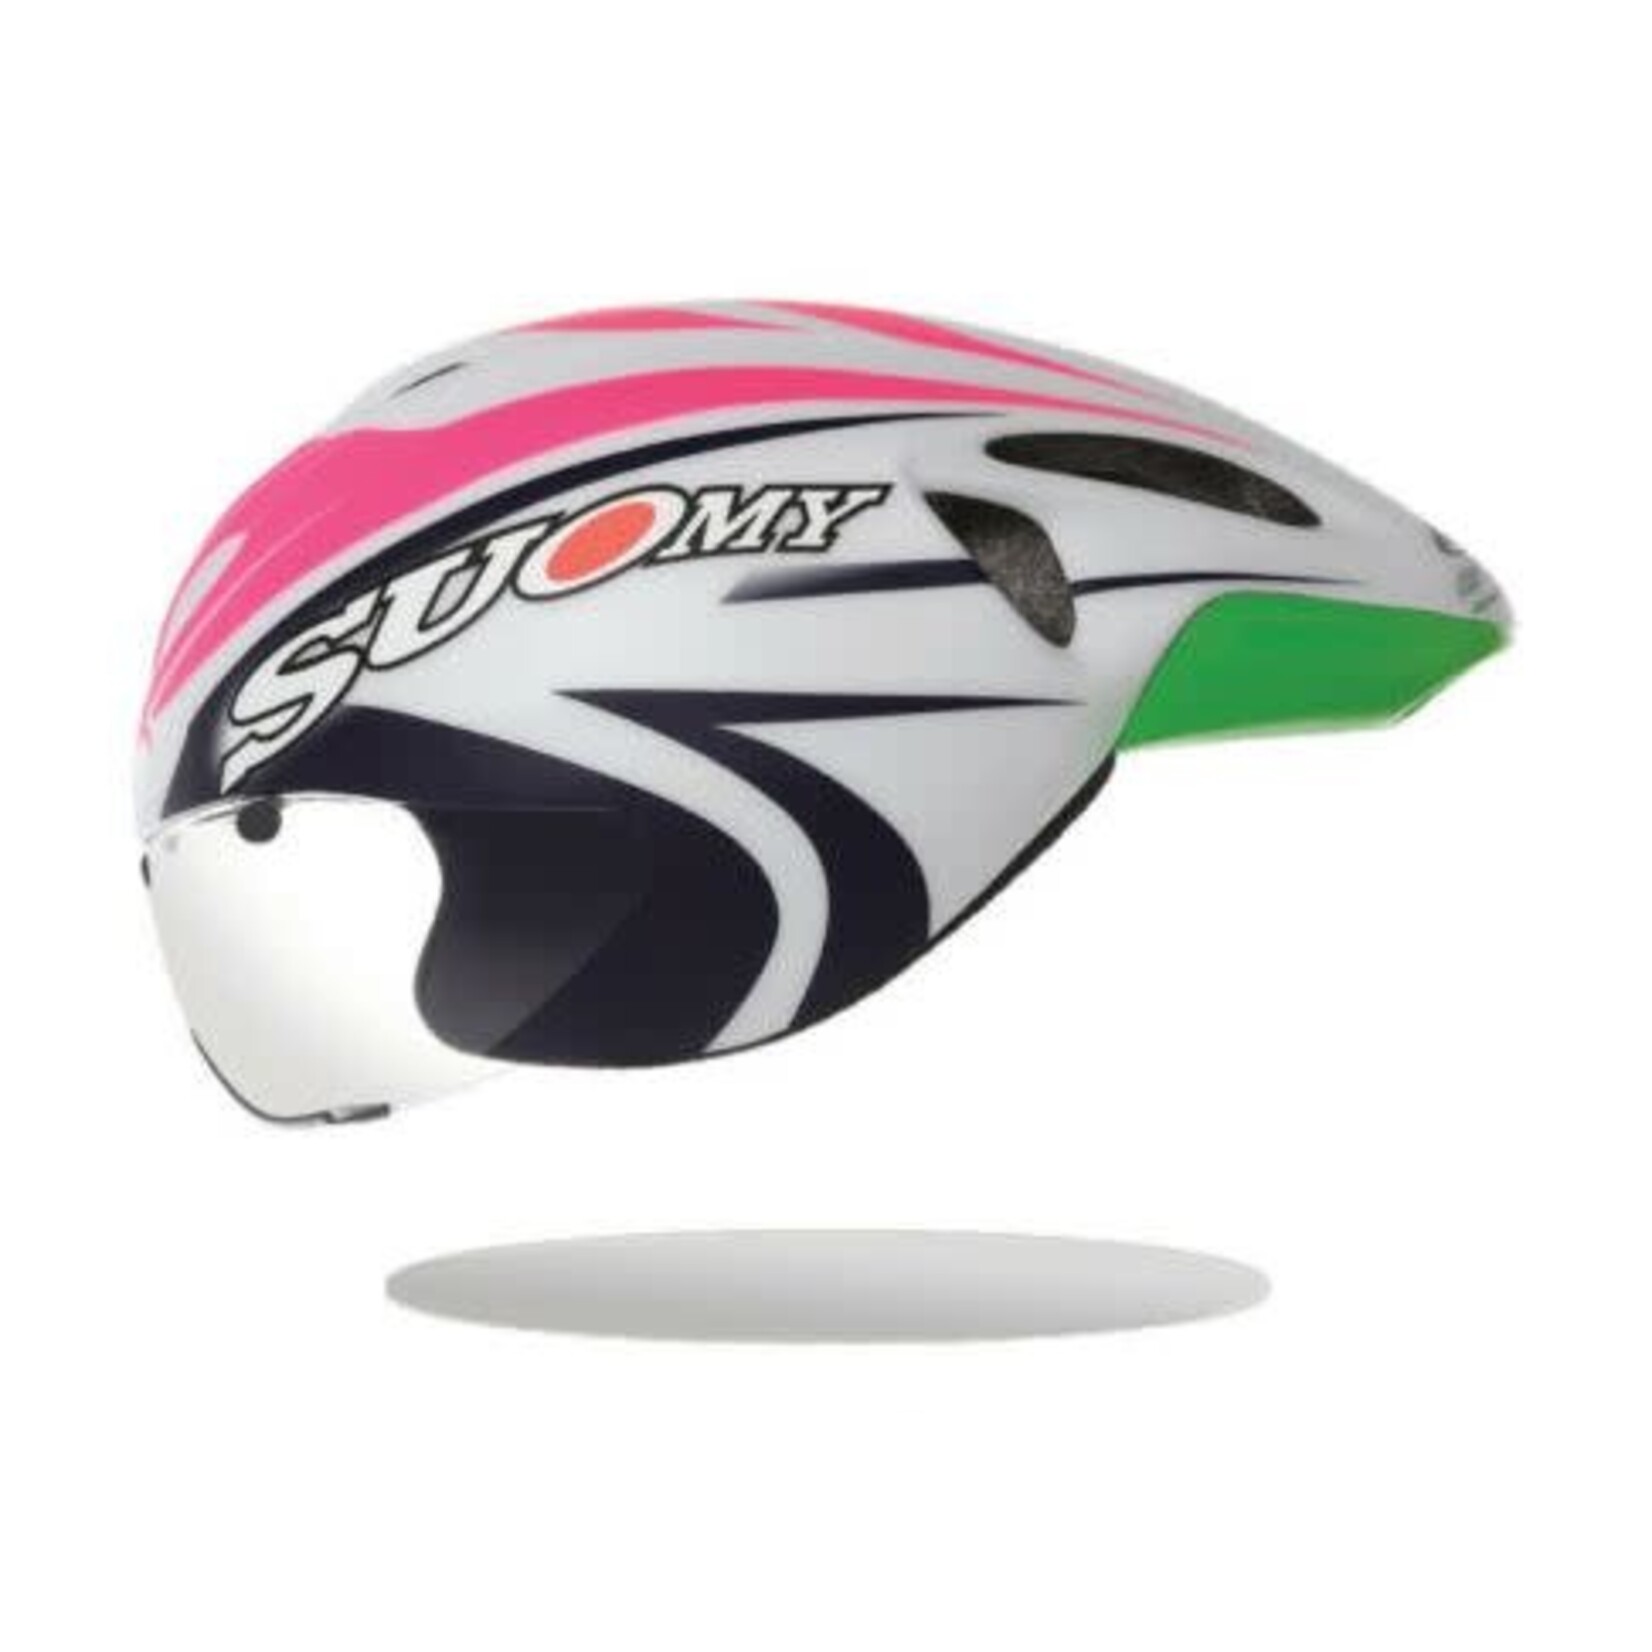 Suomy Suomy GT-R CHRONO Special Edition Pink TT Helmet Certified CE standard EN 1078